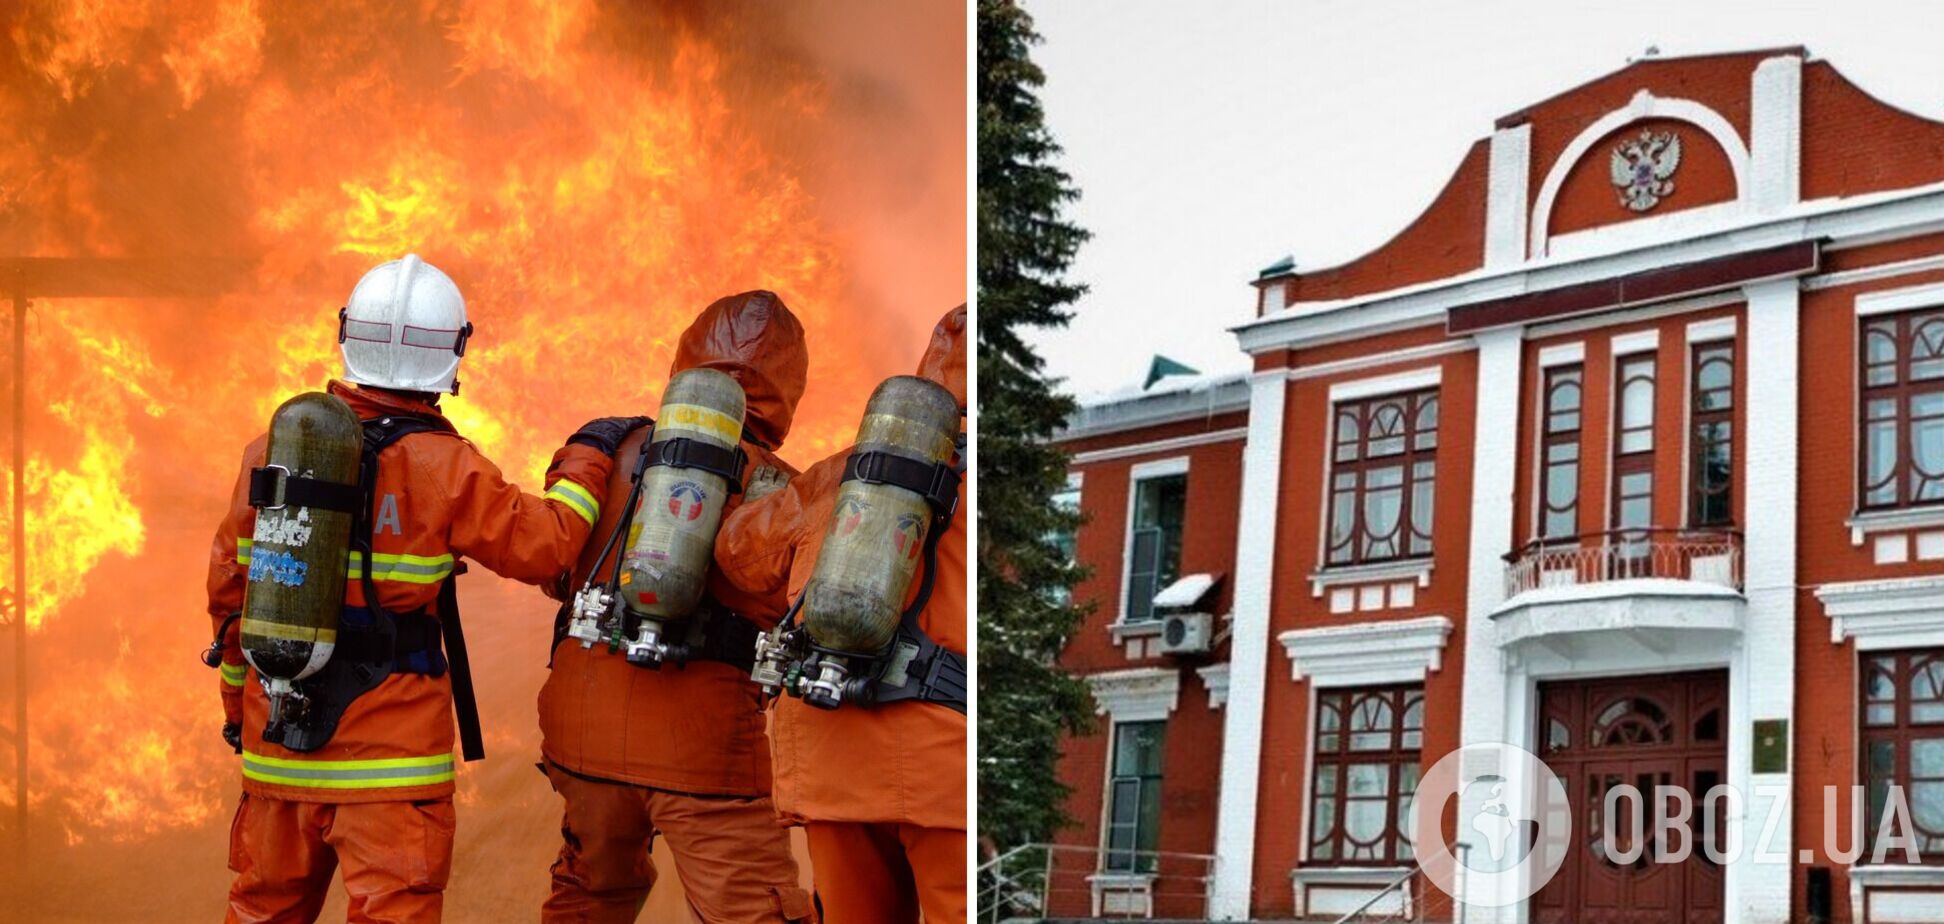 На Тамбовском пороховом заводе произошел взрыв, вспыхнул пожар: есть погибшие и пострадавшие